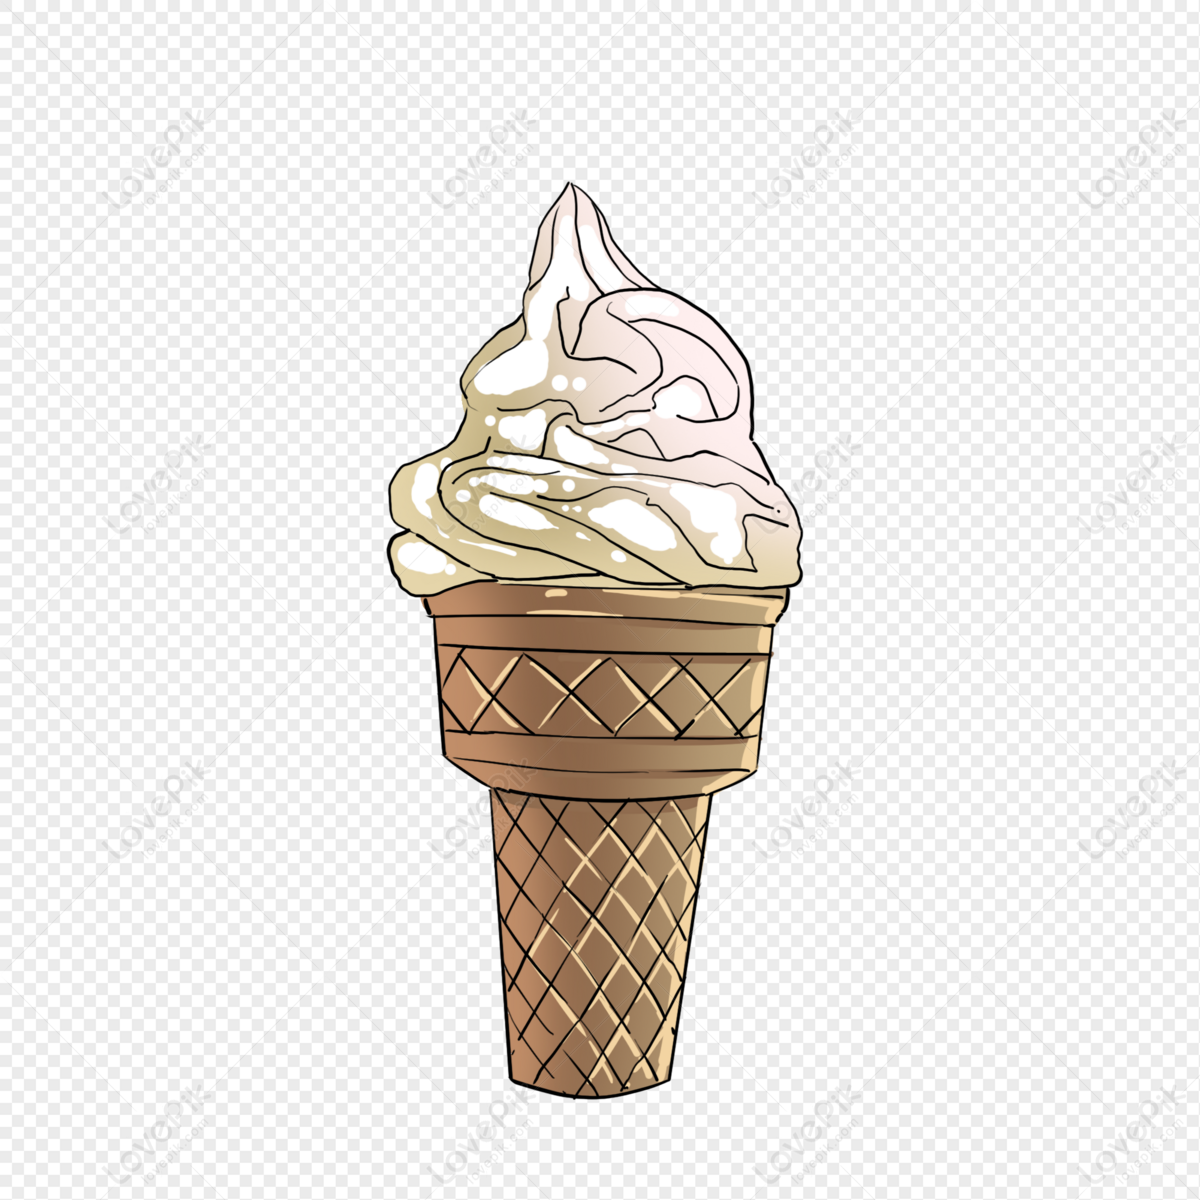 Với Ice Cream Cone Vectors, bạn sẽ tìm thấy những hình ảnh về loại kẹo kem này với đầy đủ các kiểu dáng khác nhau! Hãy trở thành người đầu tiên khám phá ra những thiết kế vector đáng yêu này.